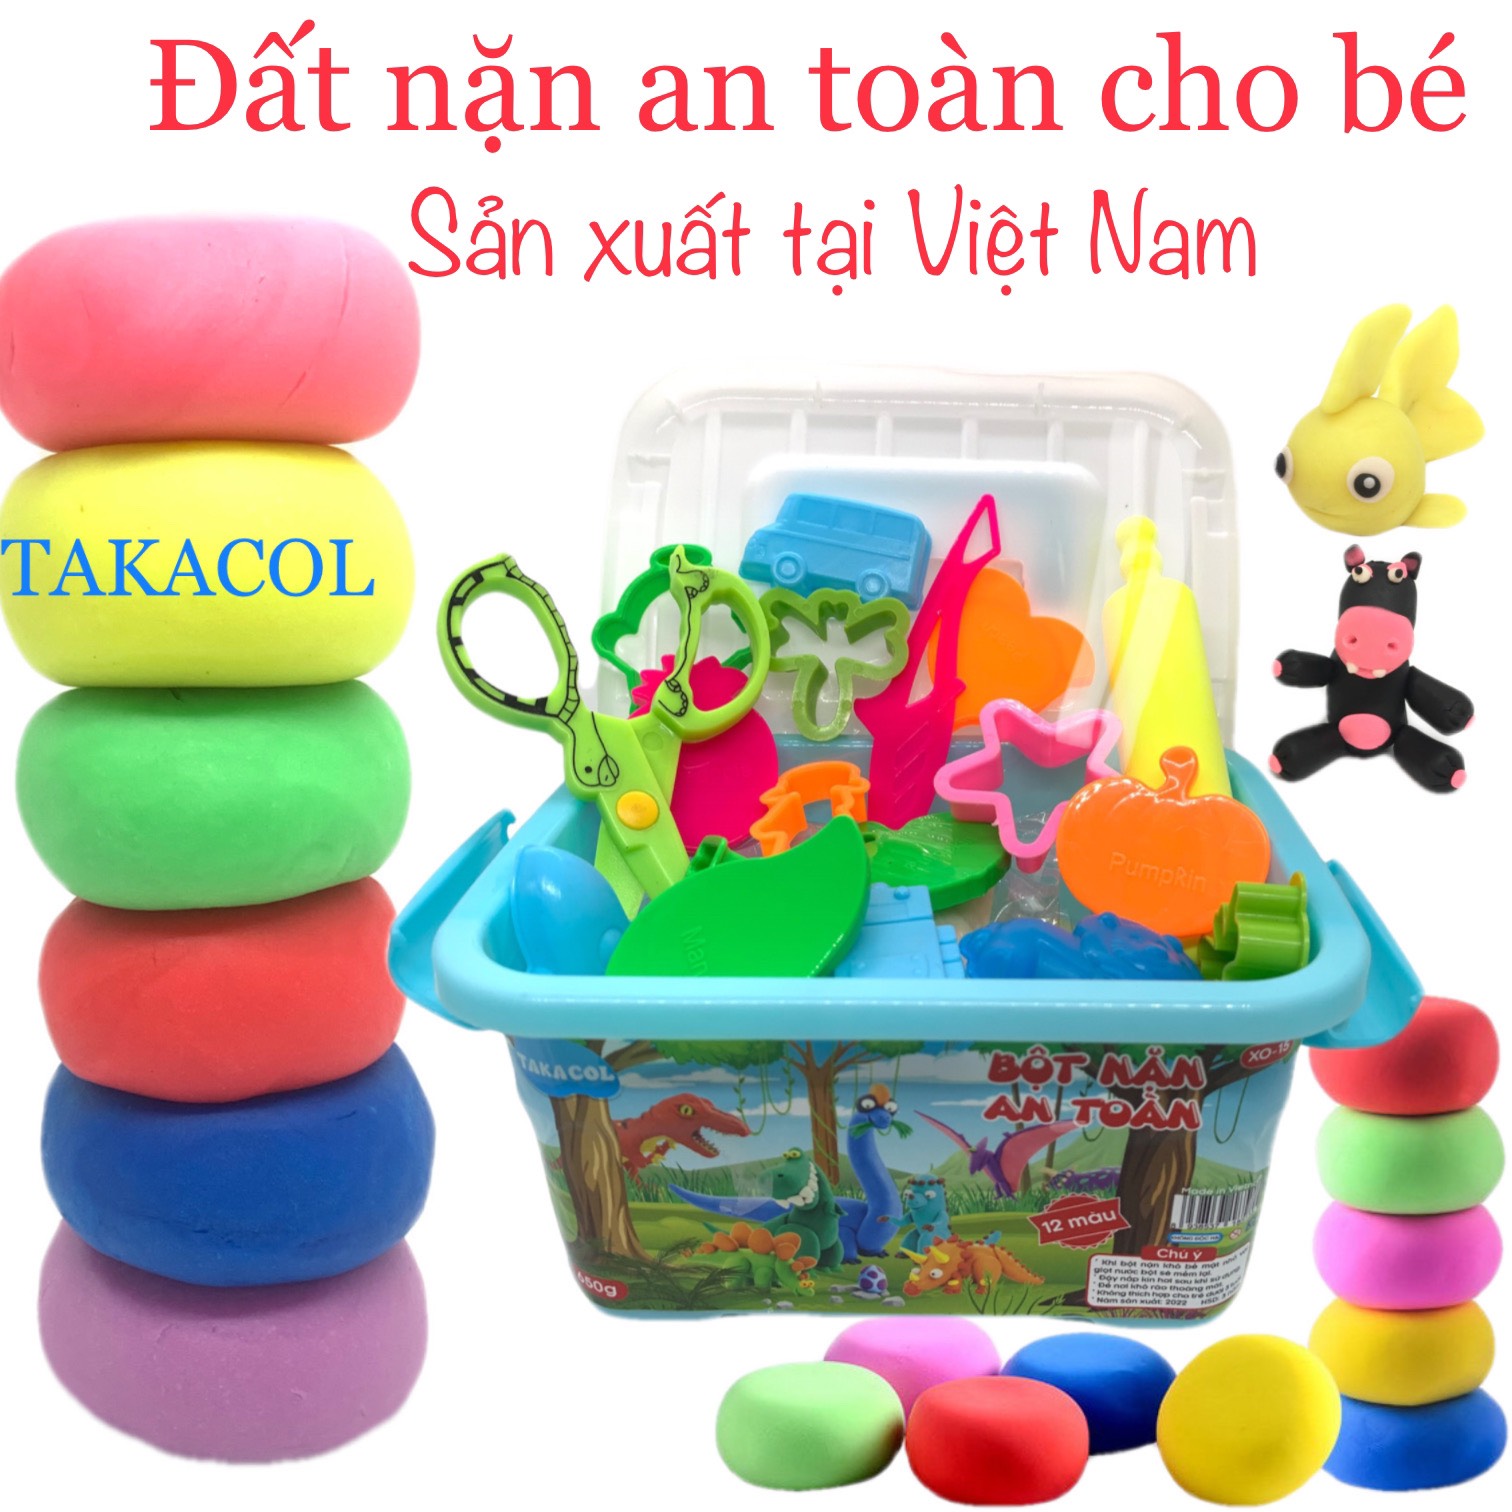 Đất nặn an toàn cho bé sản xuất tại Việt Nam bột nặn TAKACOL 12 màu có